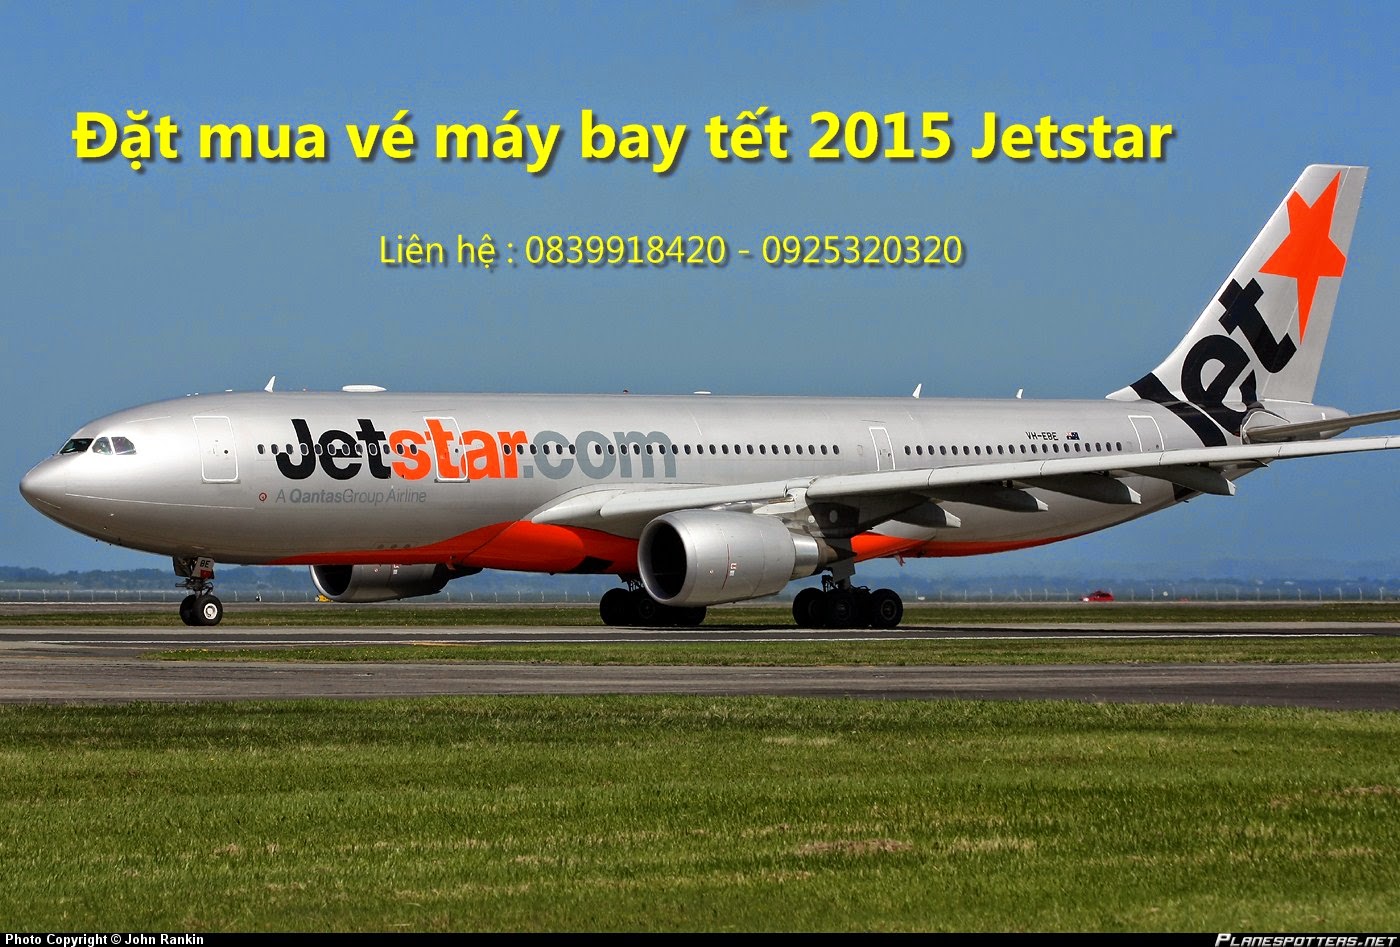 Mua vé máy bay tết 2015 Jetstar nào mọi người Ve+may+bay+tet+2015+jetstar